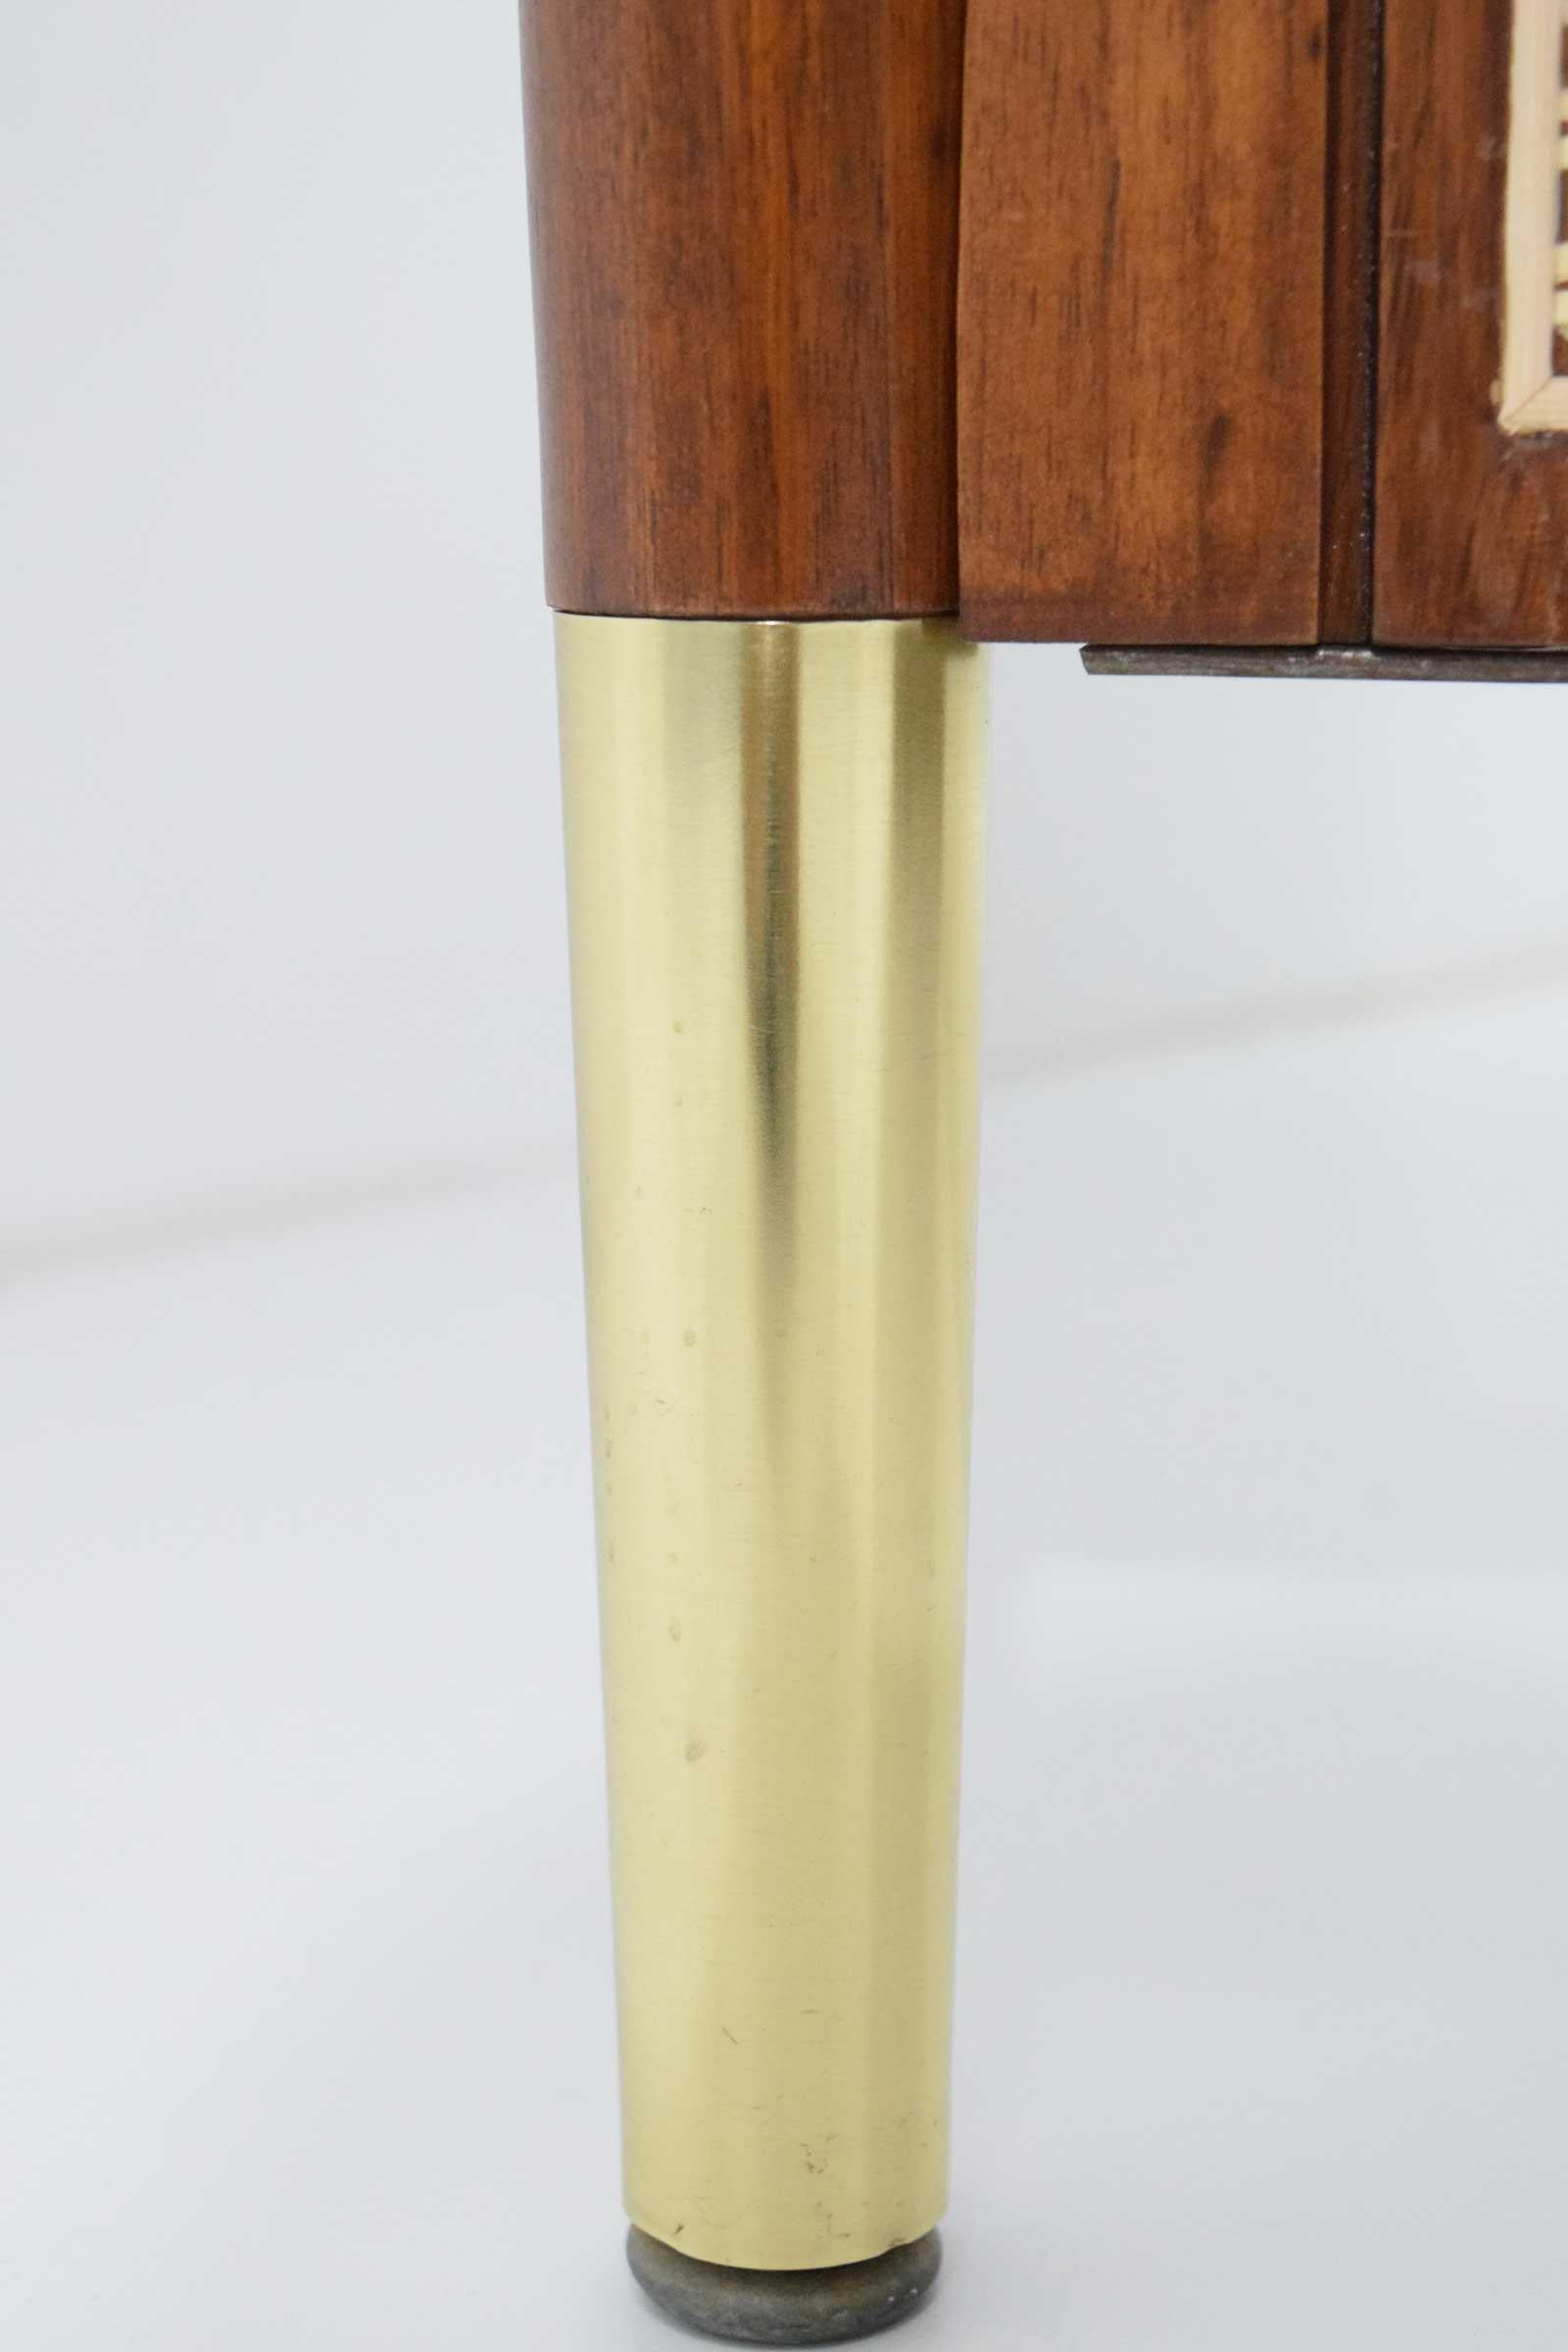 Brass Rosewood Midcentury Desk by Miller Desk & Safe Company, 1930s